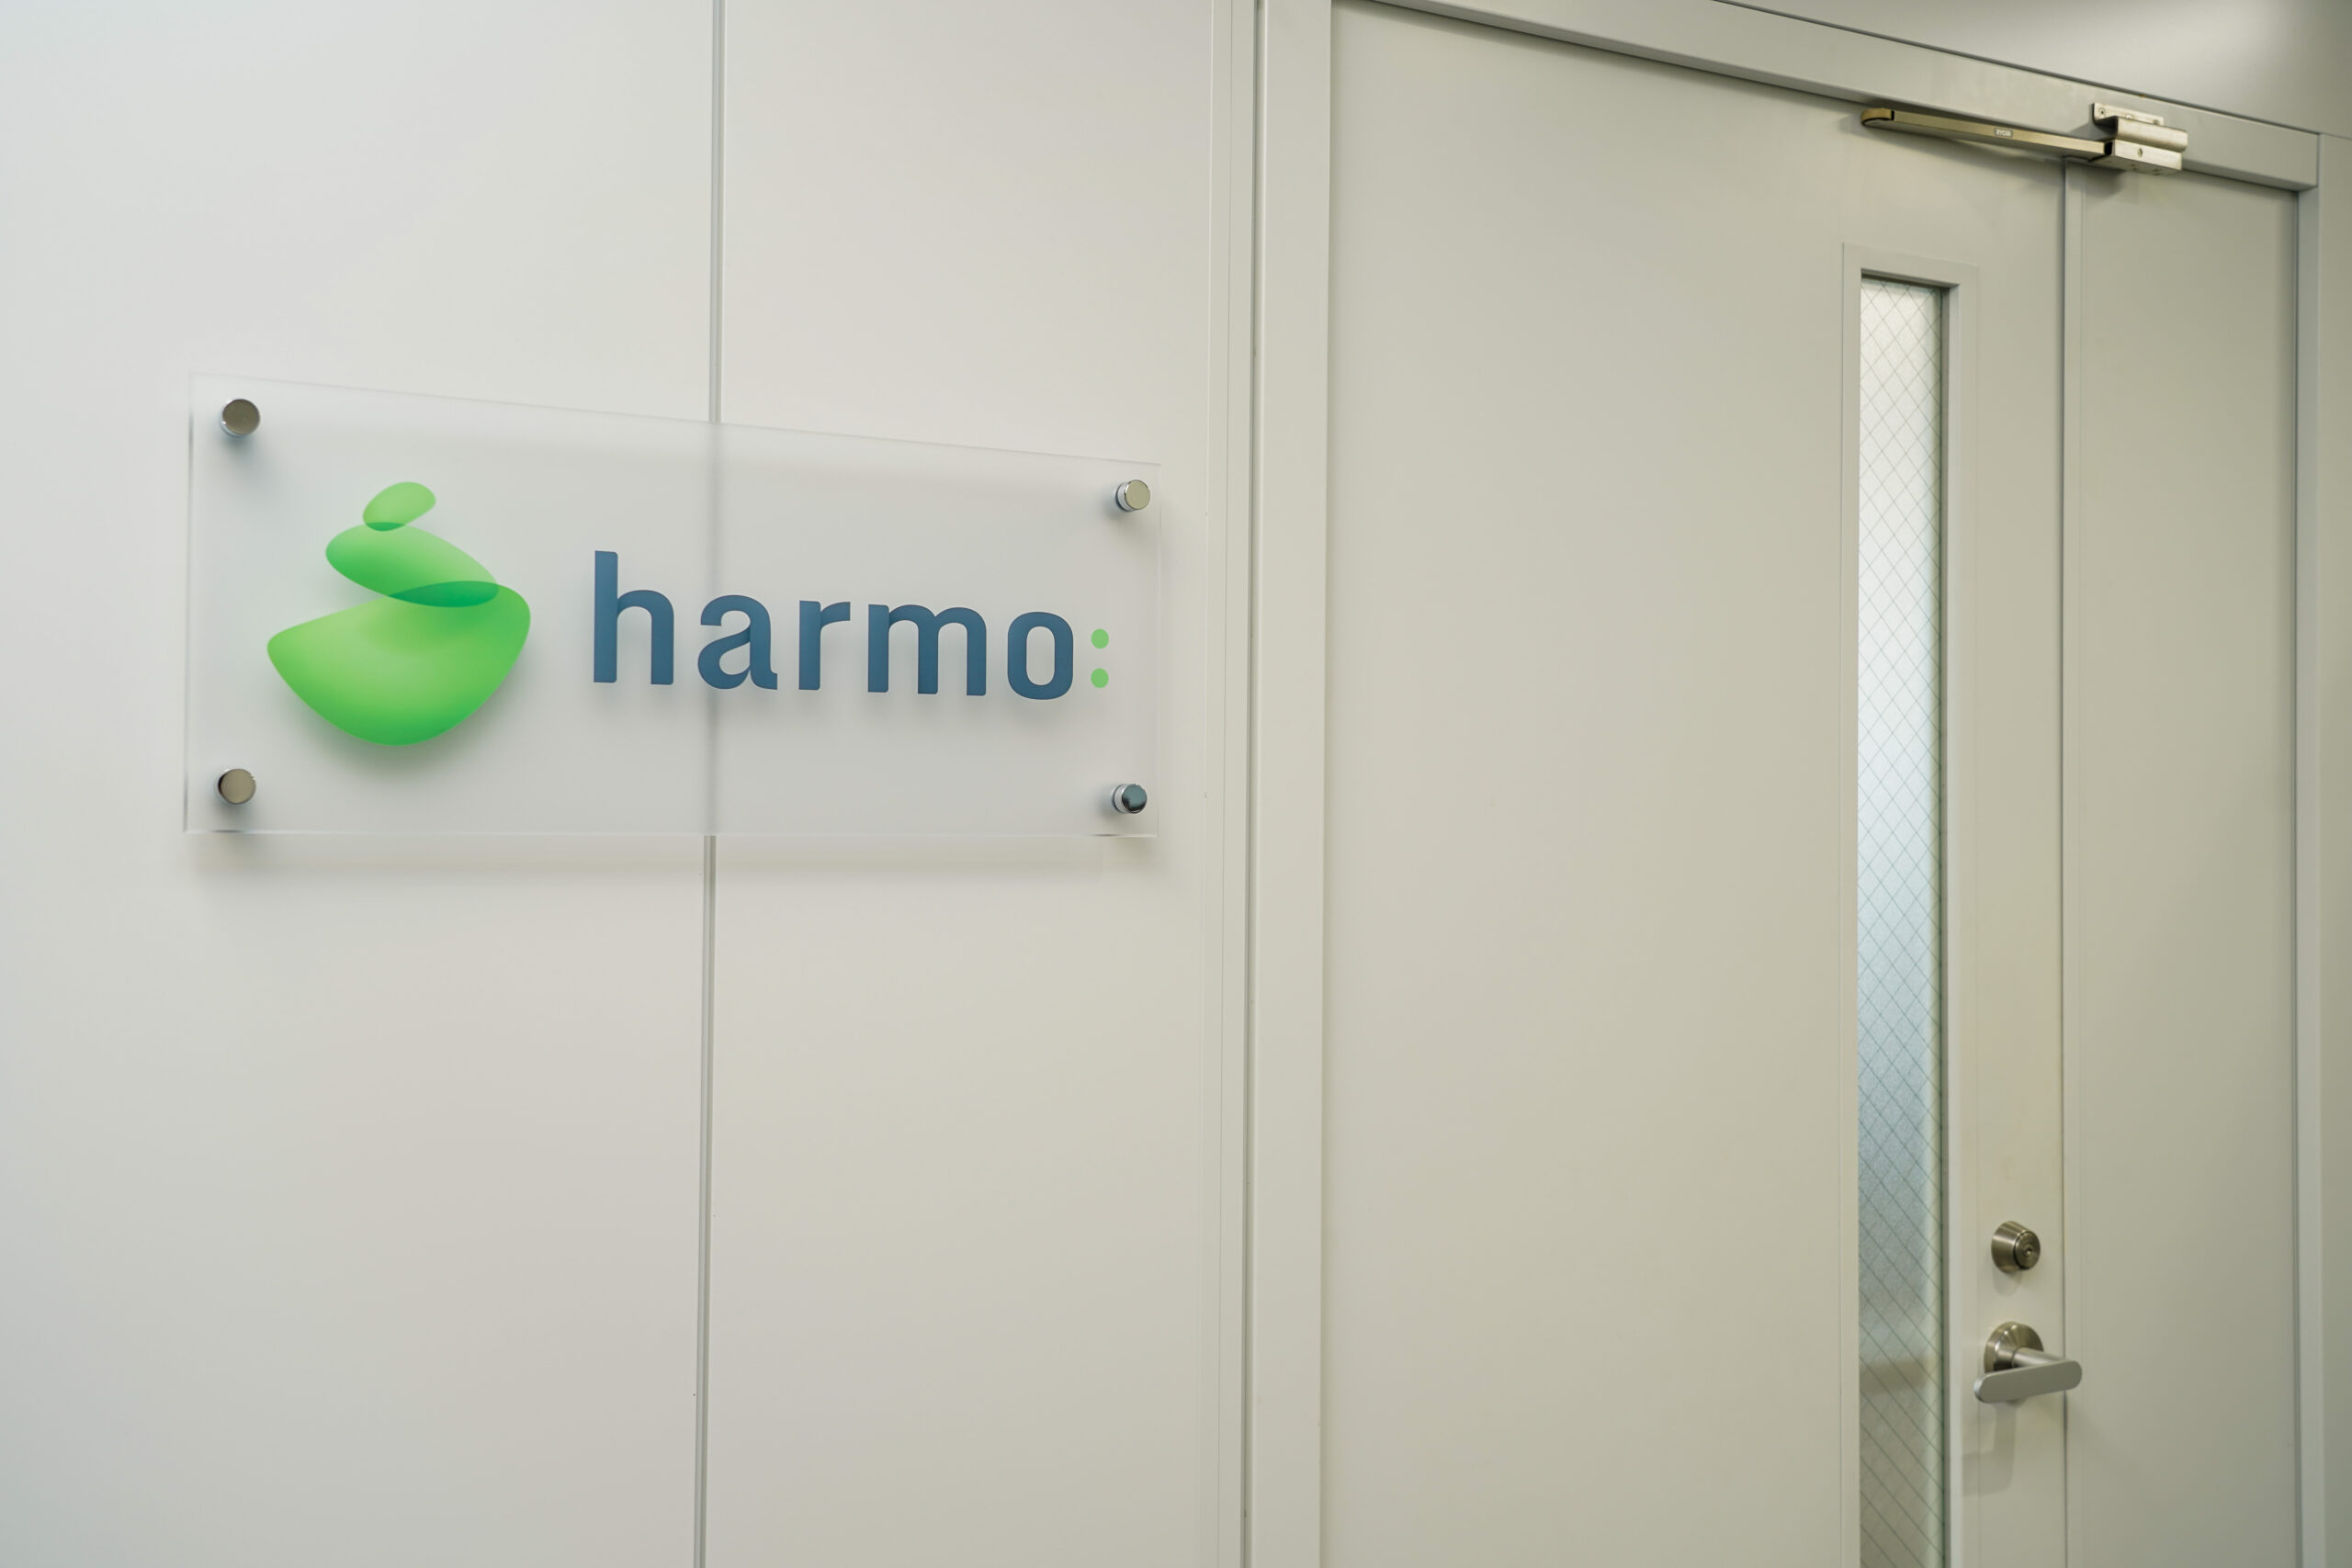 harmo株式会社のオフィスの執務エリア